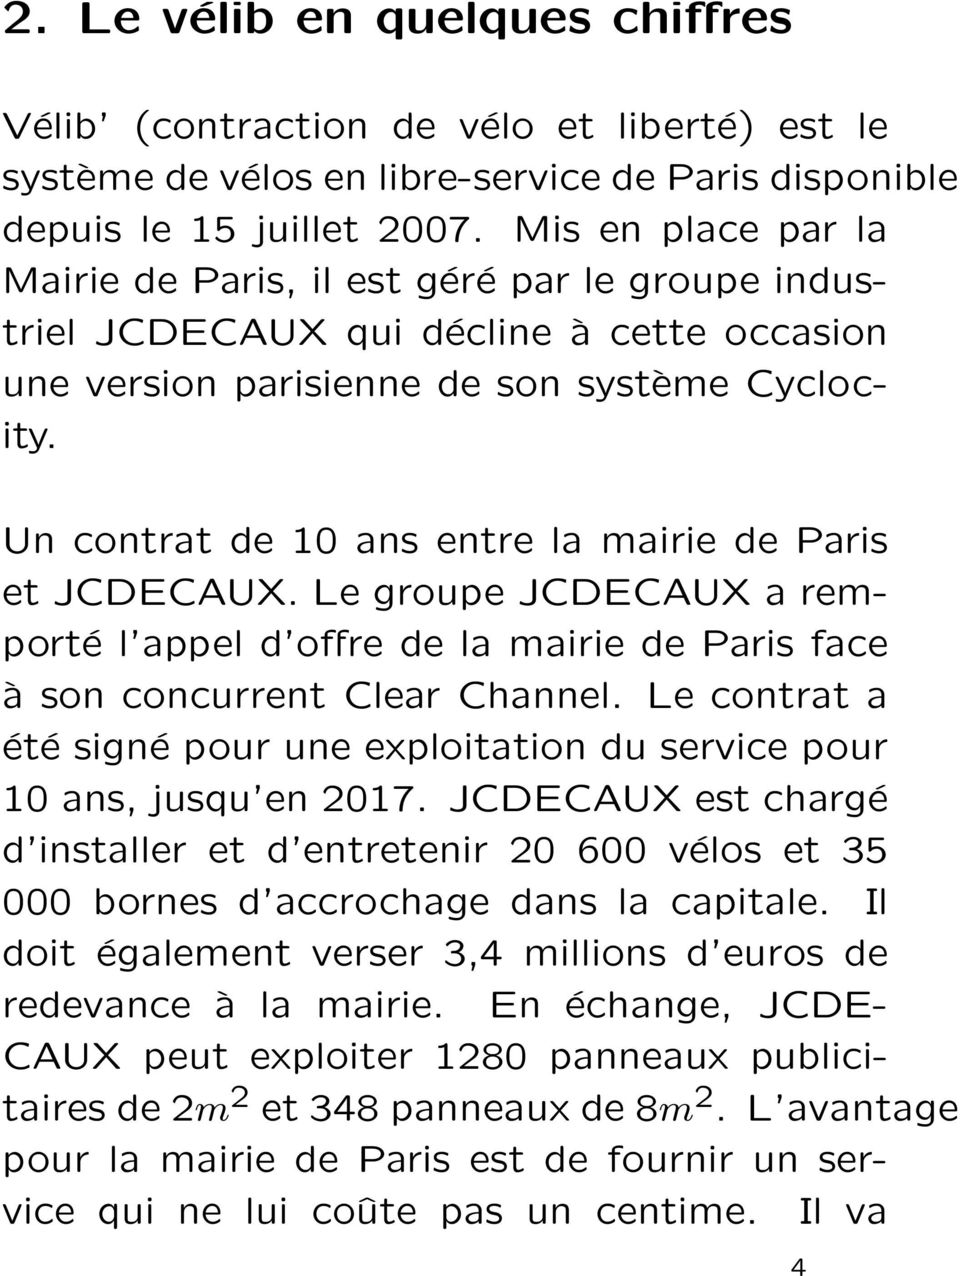 Un contrat de 10 ans entre la mairie de Paris et JCDECAUX. Le groupe JCDECAUX a remporté l appel d offre de la mairie de Paris face à son concurrent Clear Channel.